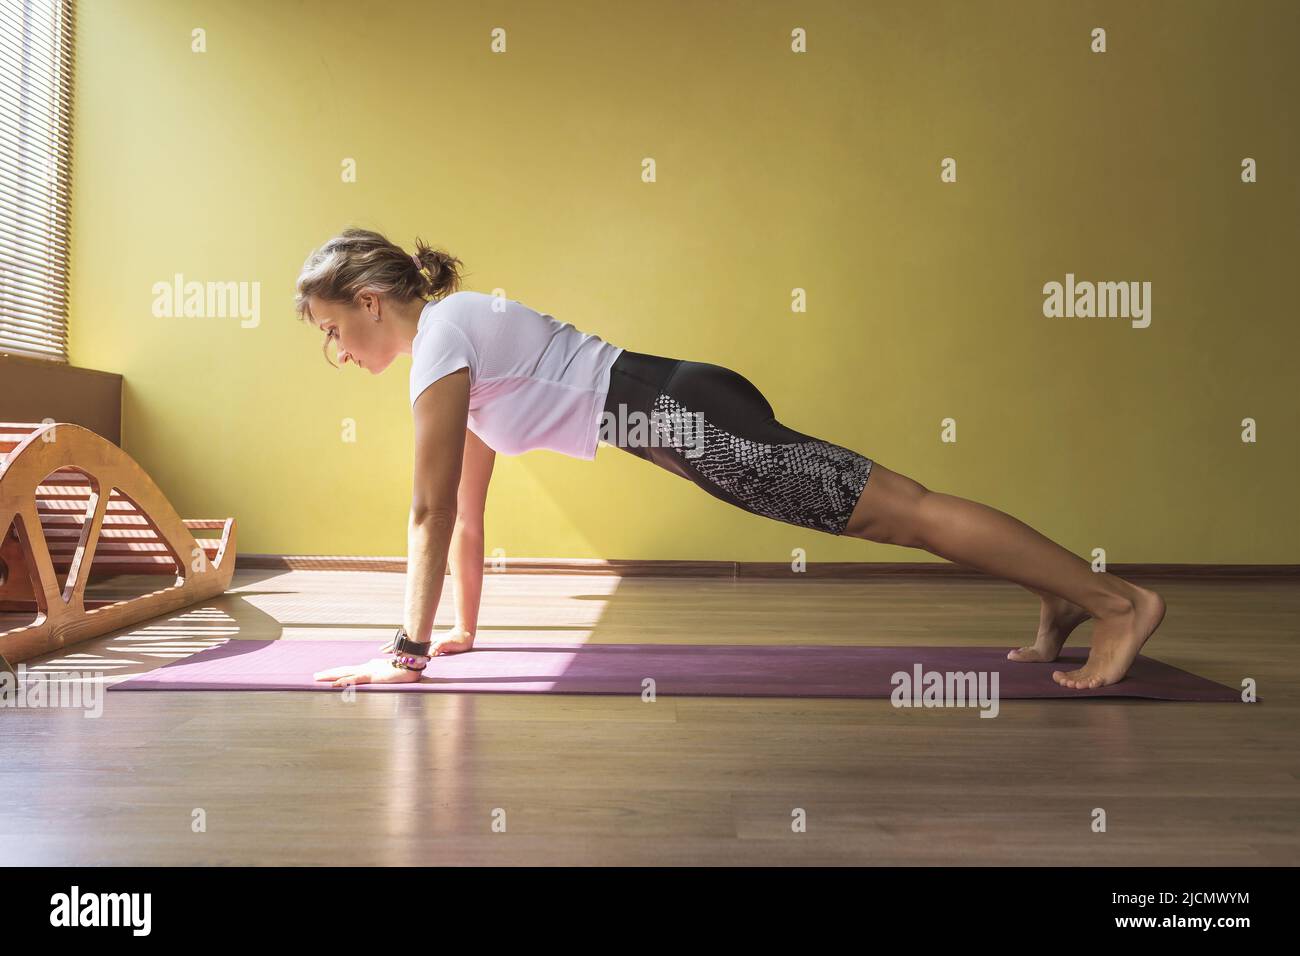 Mujer en ropa deportiva practicando yoga haciendo ejercicio kumbhakasana, postura de plancha, haciendo ejercicio en la colchoneta en la habitación Foto de stock